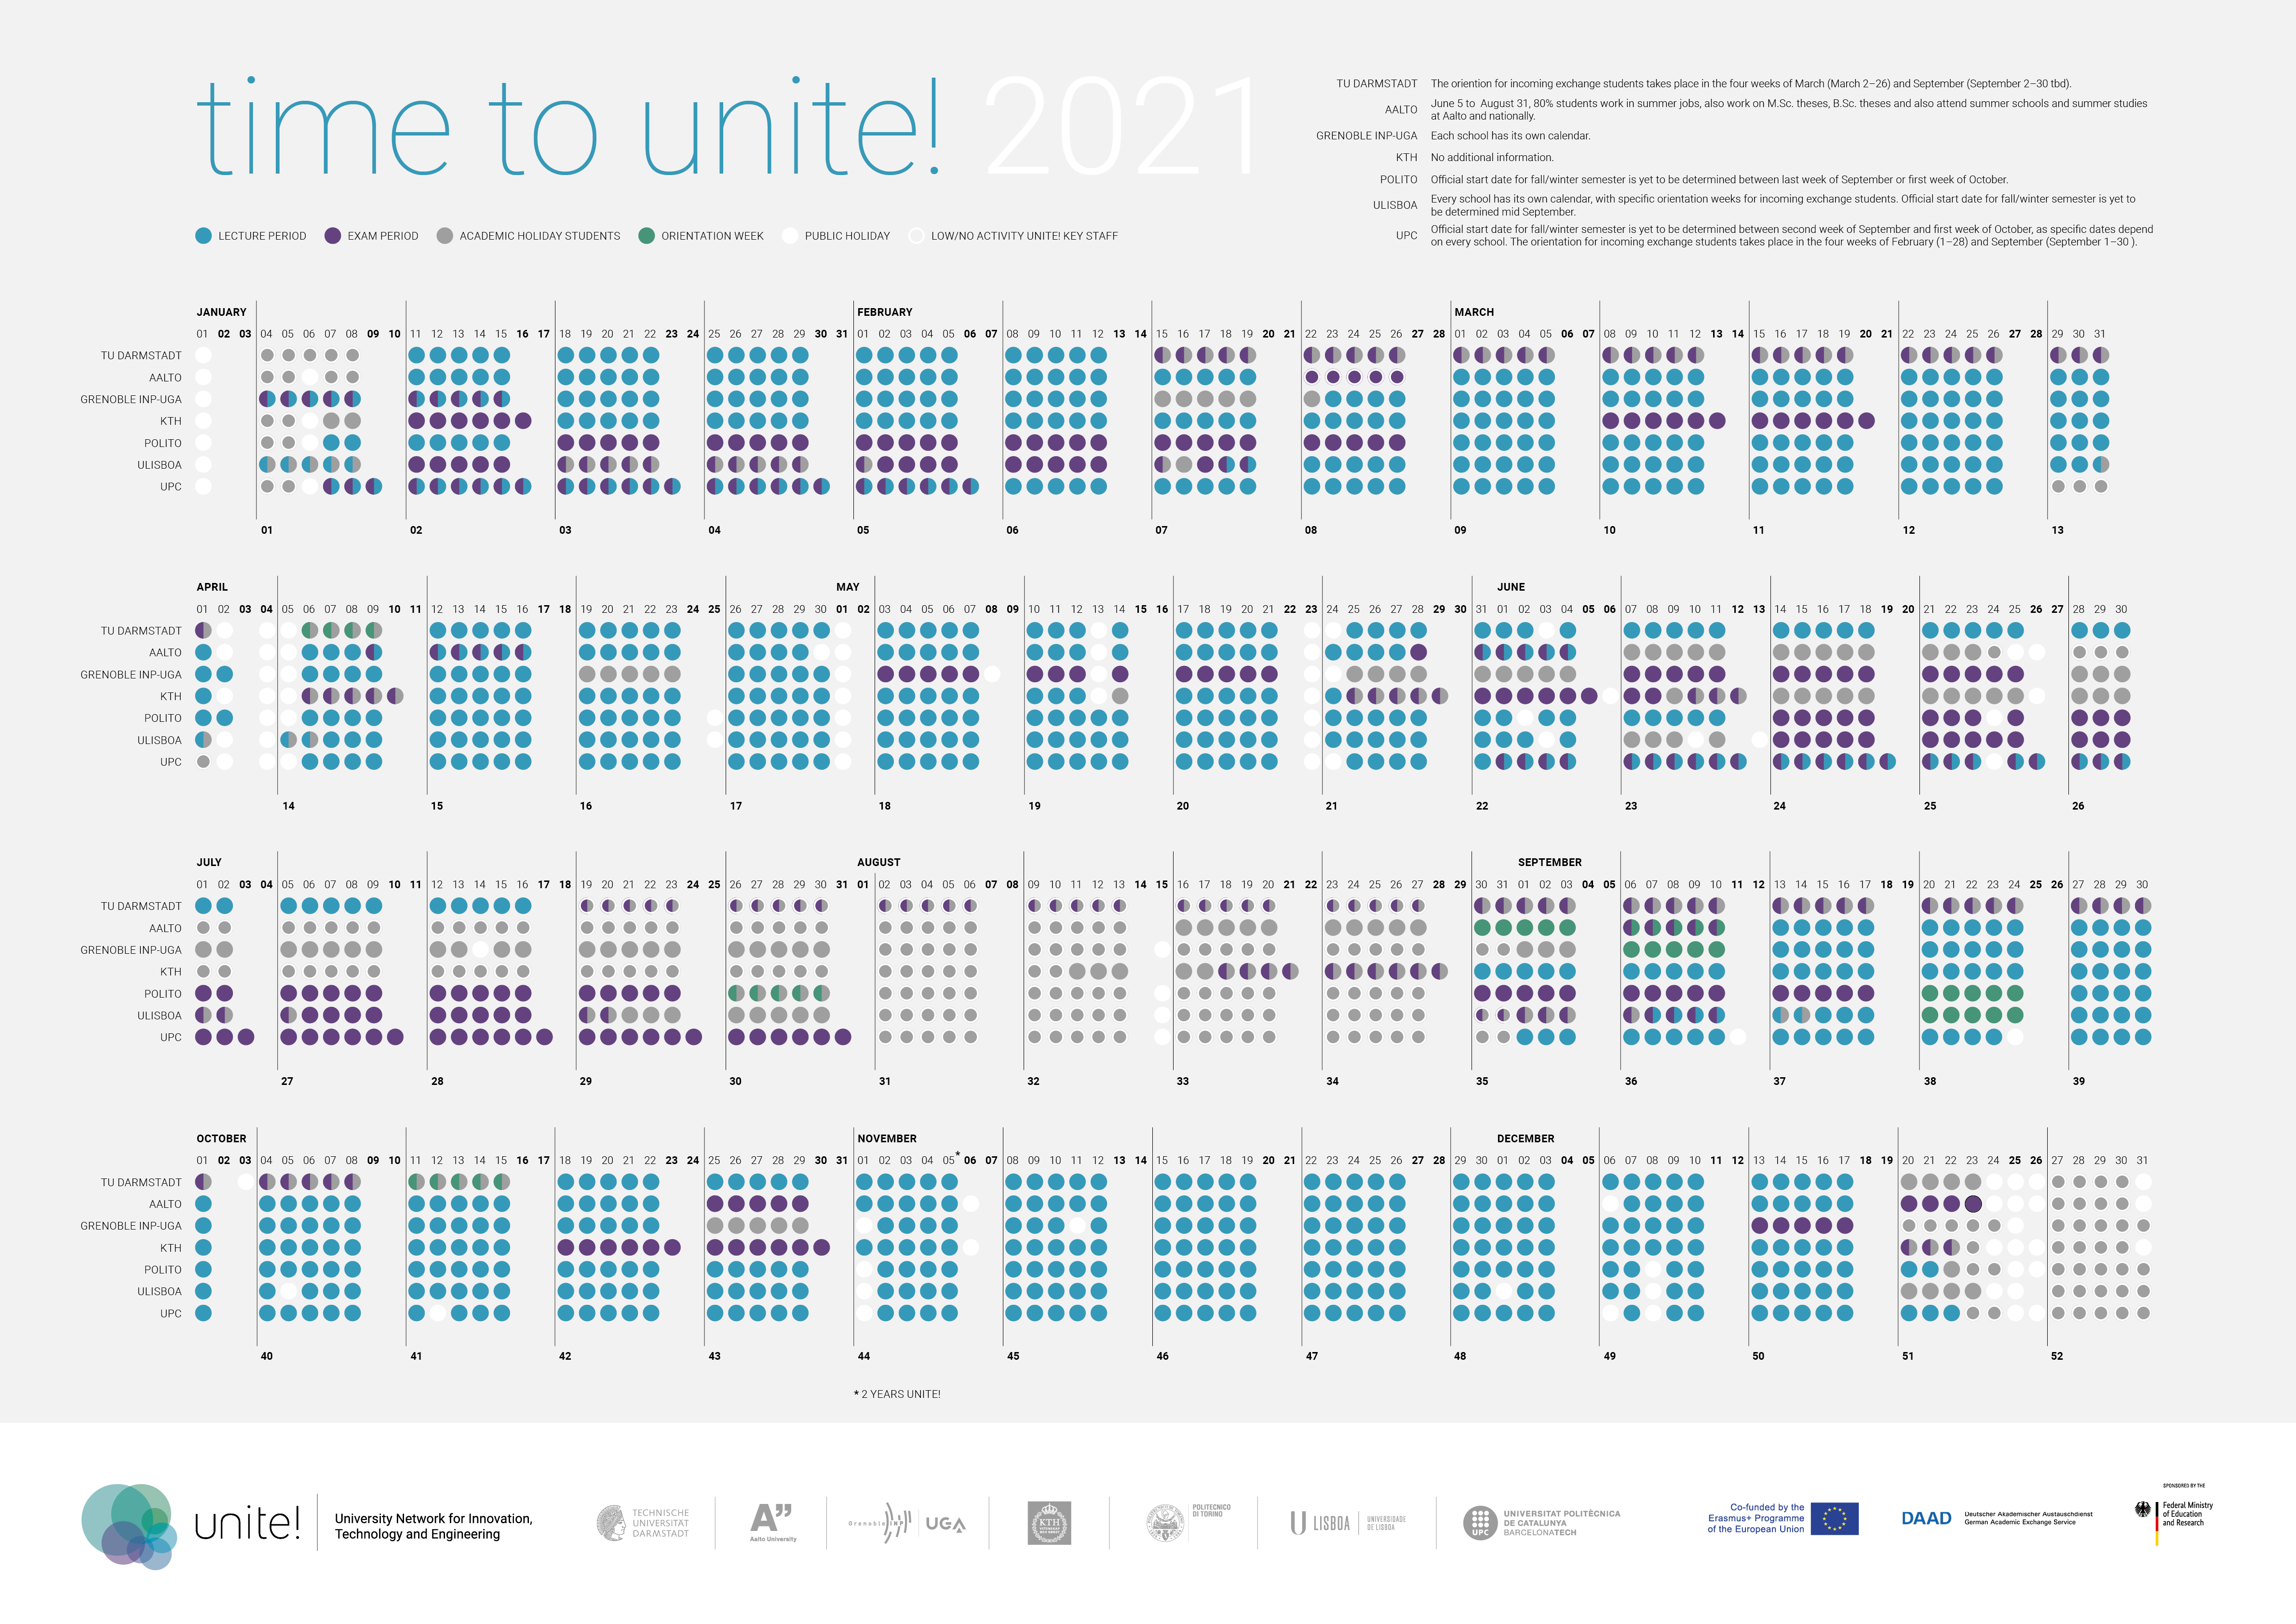 Unite! Calendar 2021